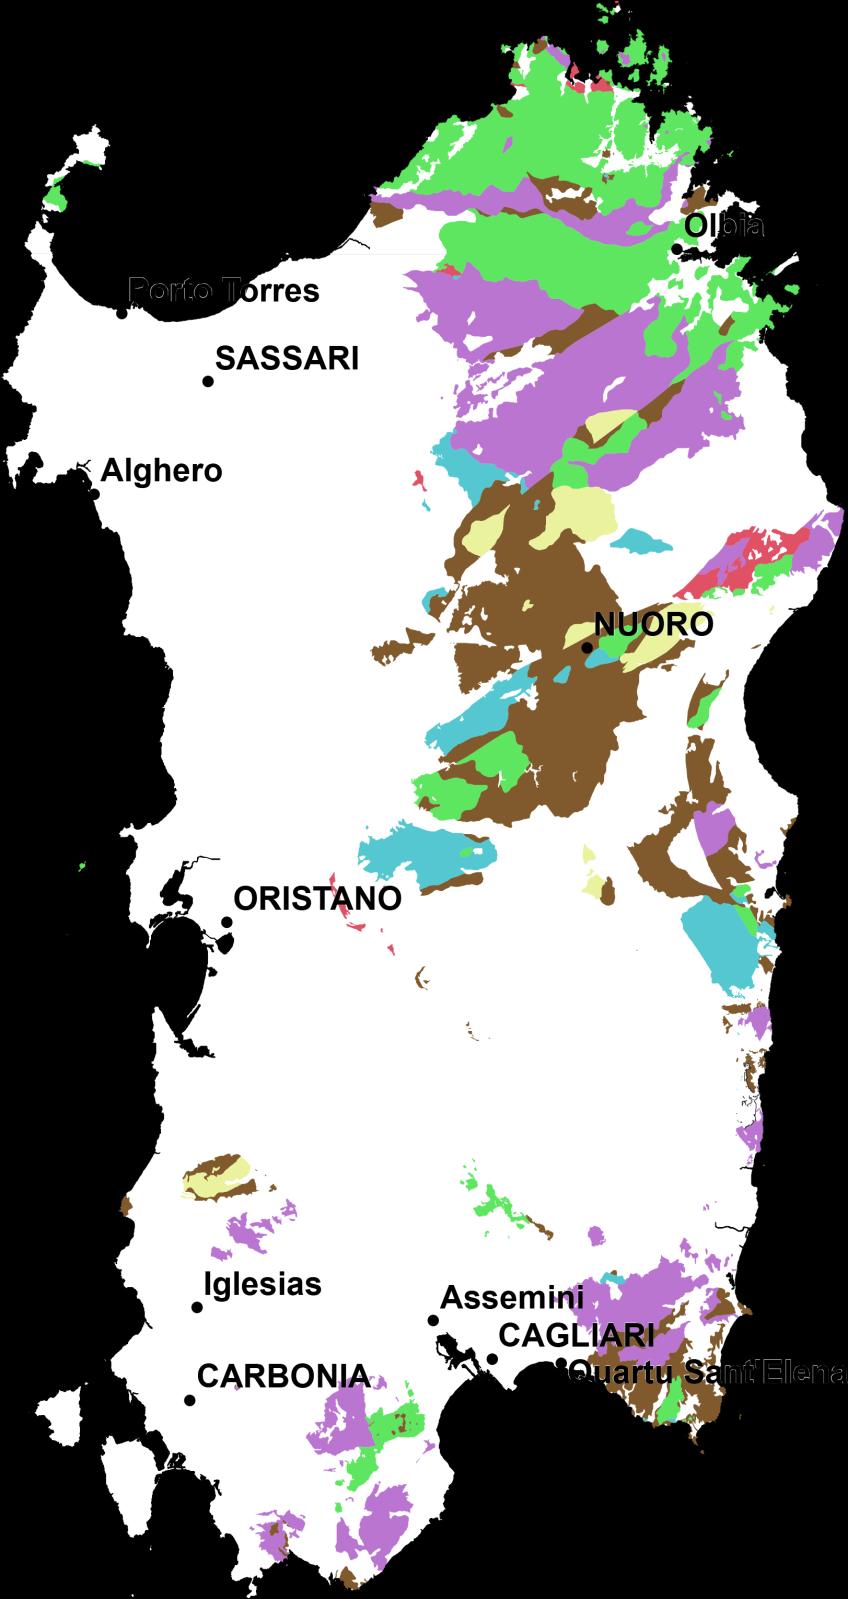 La carta geologica di riferimento Secondo la Carta Geologica della Sardegna a scala 1:250.